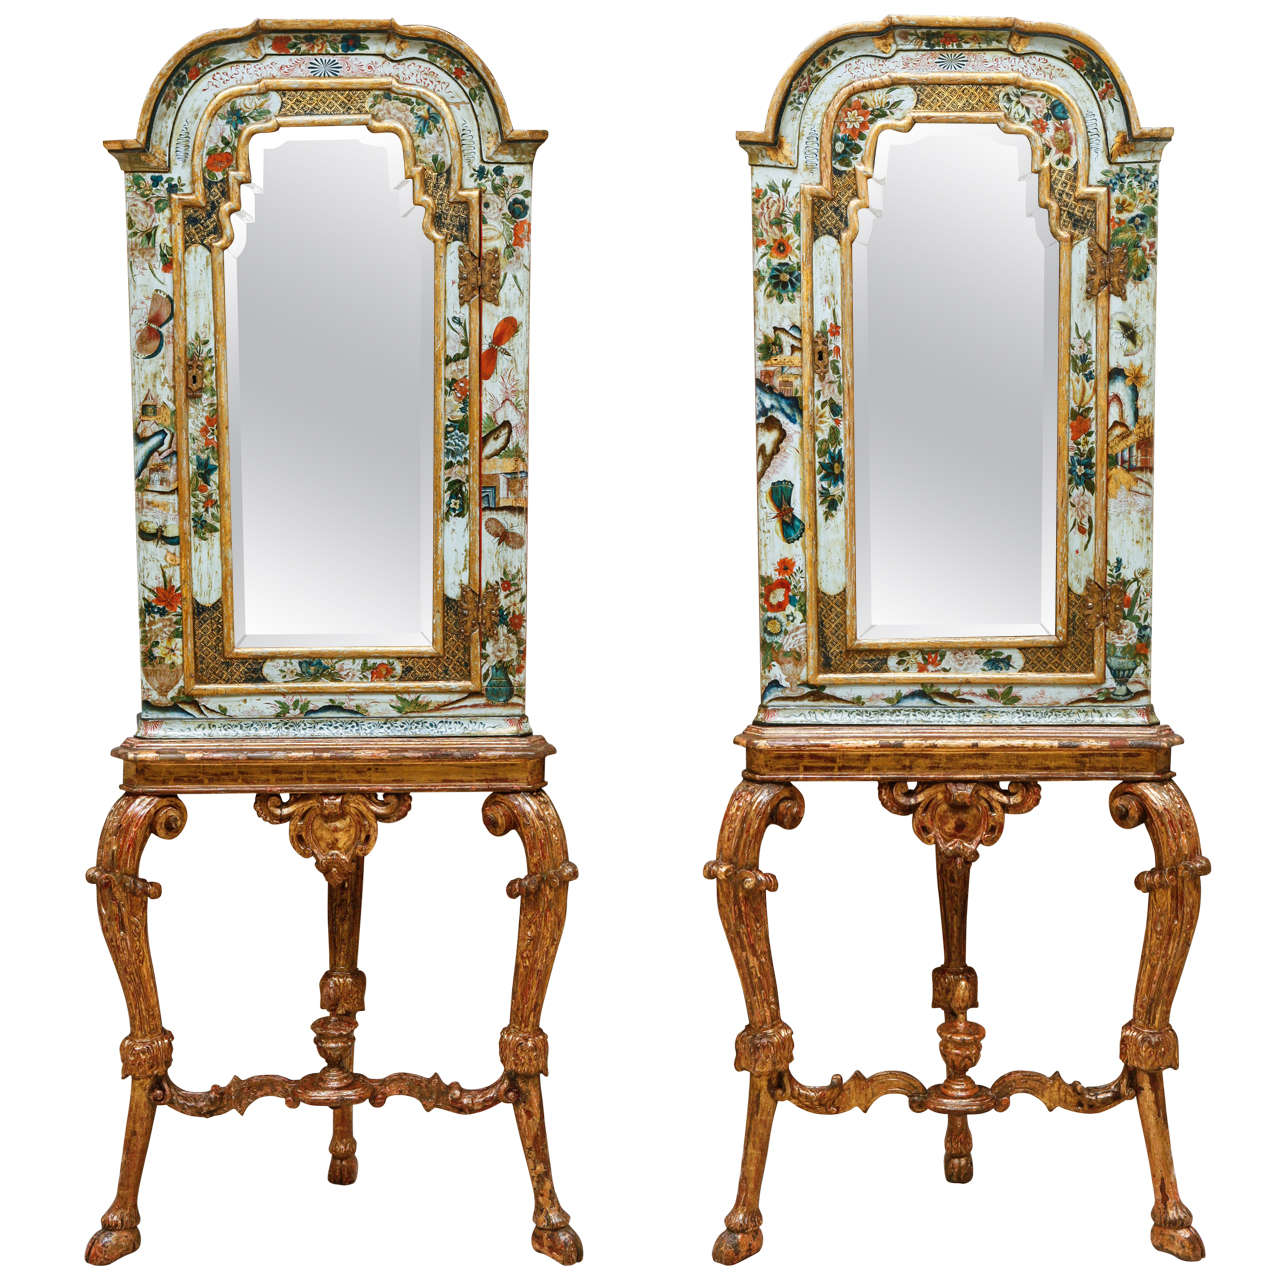 Paire d'armoires d'angle avec miroir de style chinoiserie anglaise du 18ème siècle